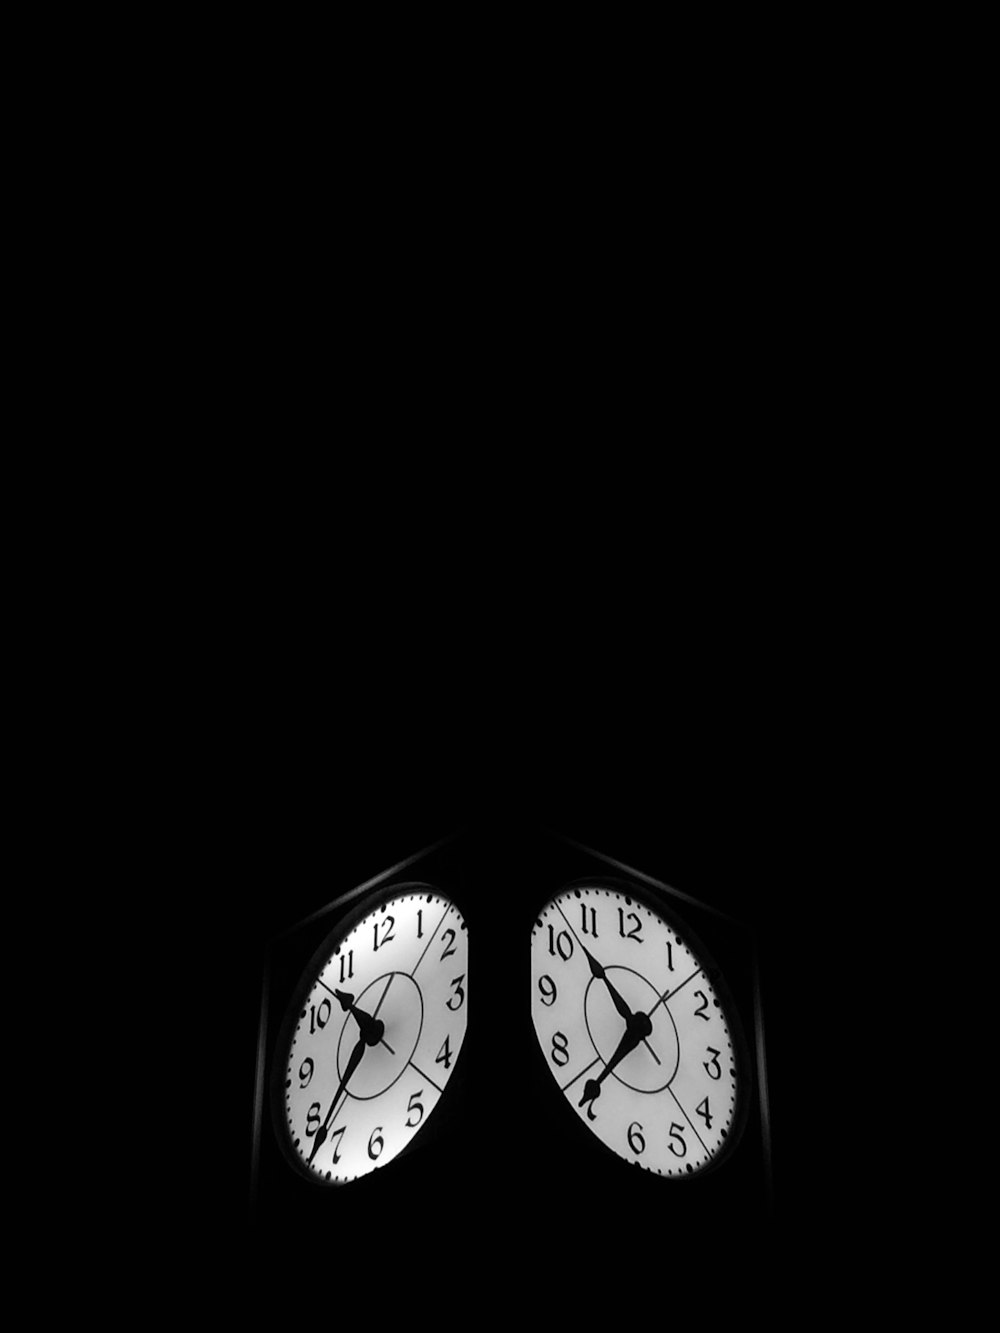 7:52를 표시하는 검은색 시계